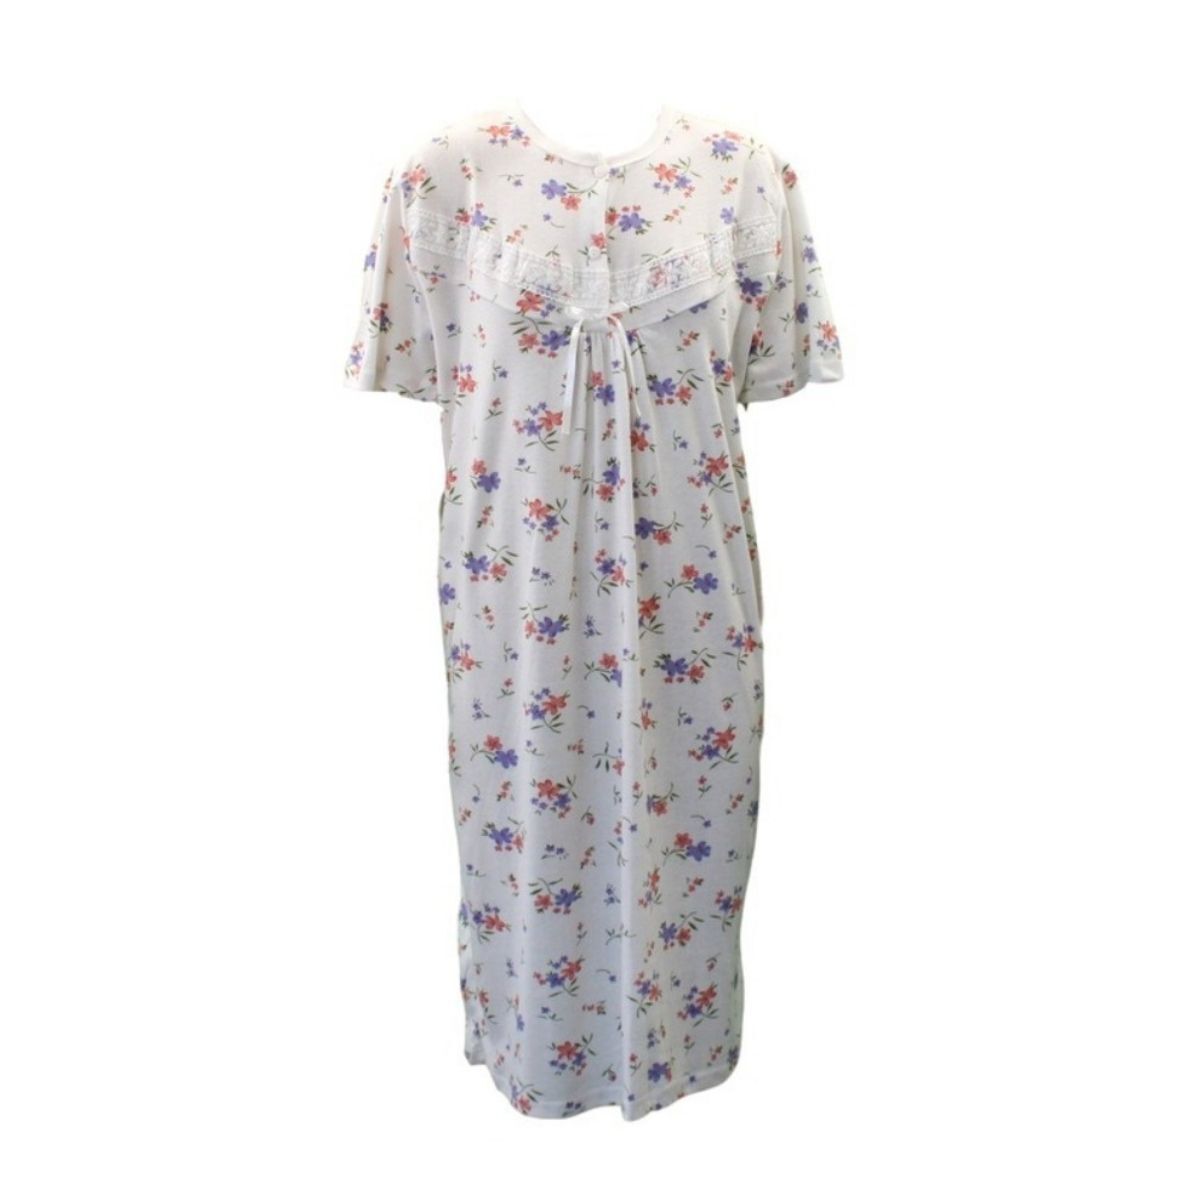 NEW Women's Ladies Cotton Nightie Night Gown Pajamas Pyjamas PJ ...